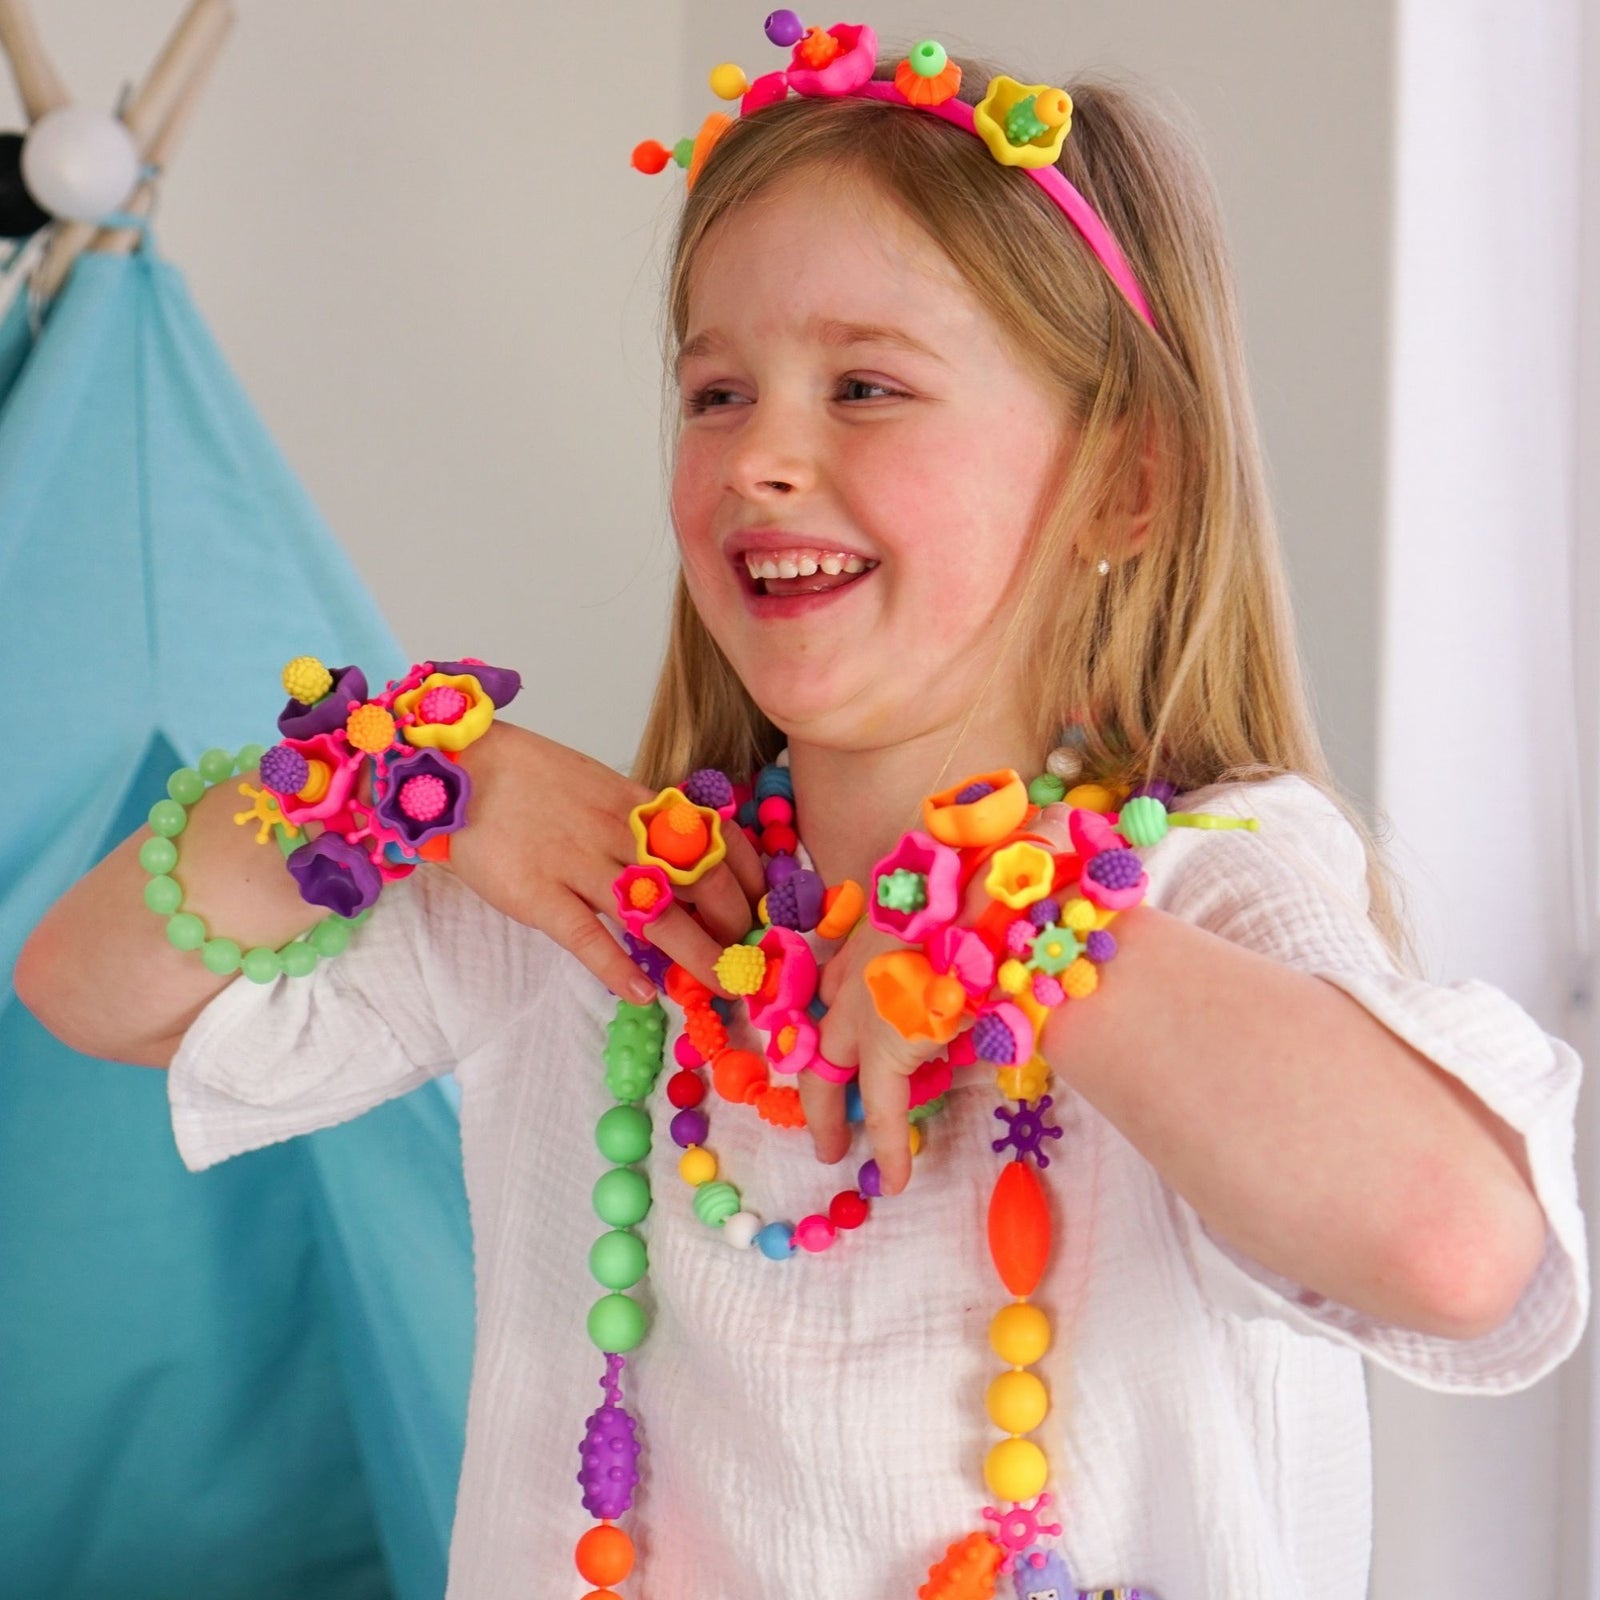 Beads Beading Toys Girls, Make Bracelets Girls Kit